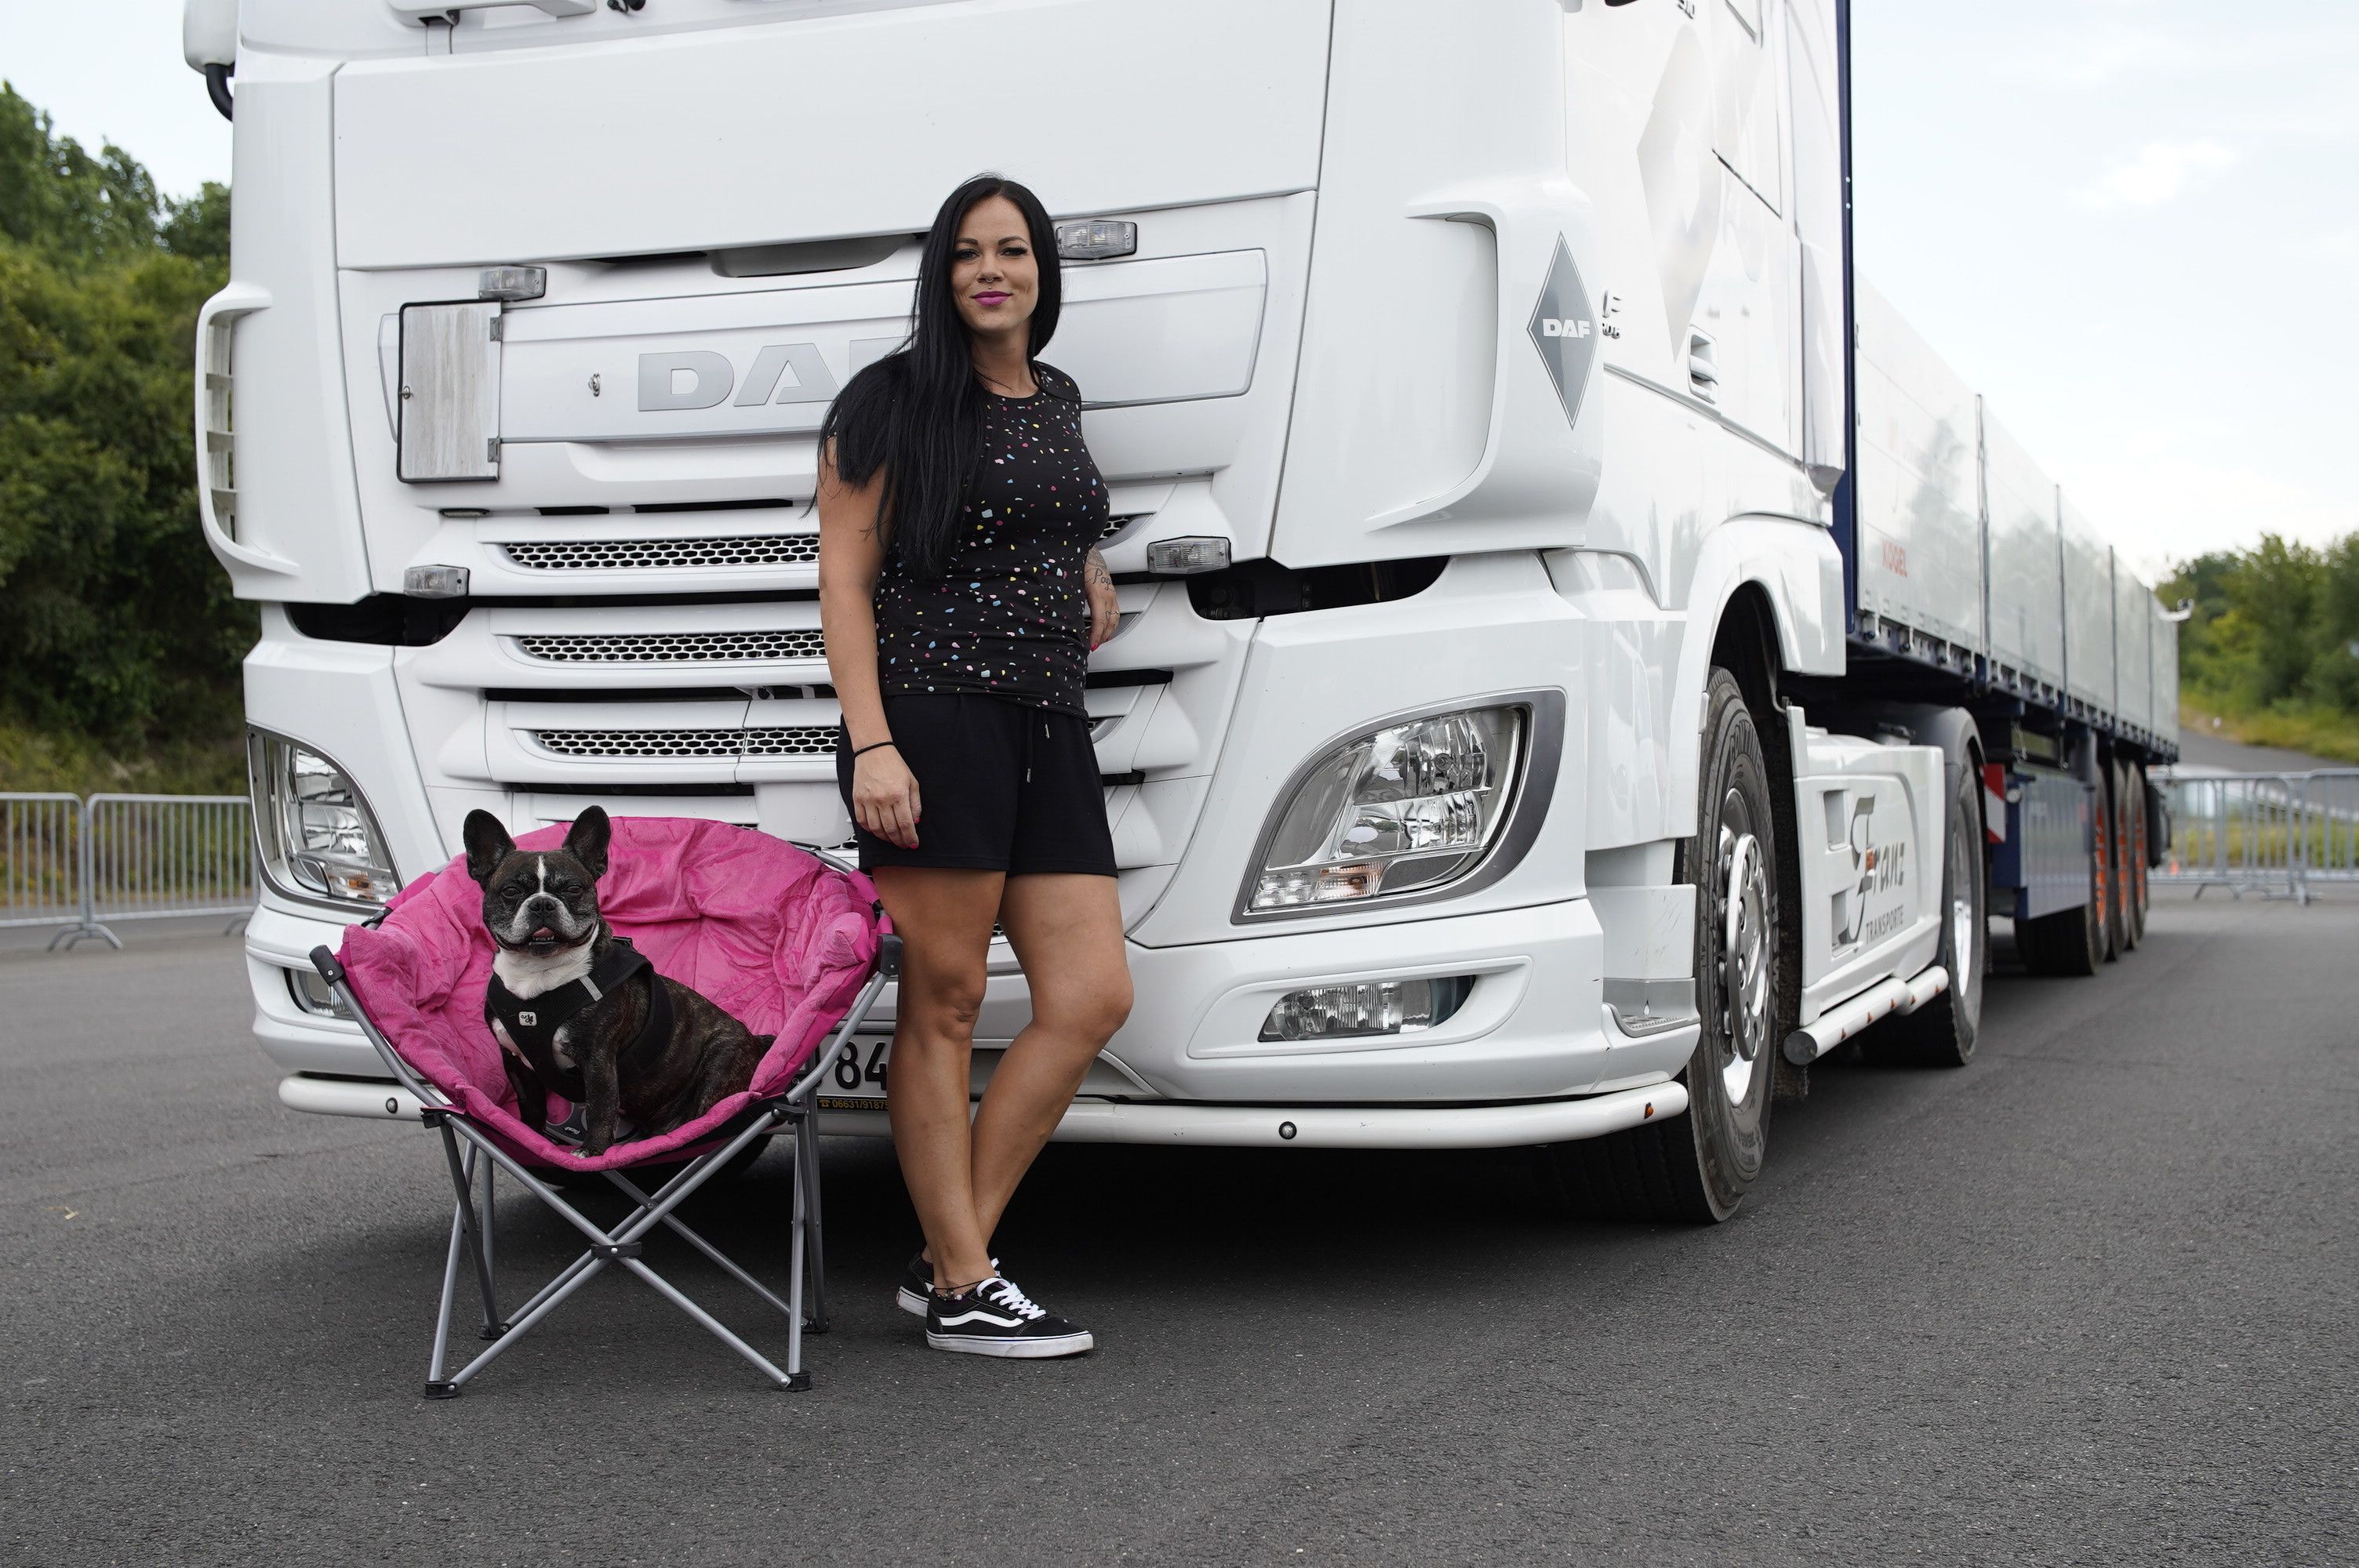 Einfach unzertrennlich: "Trucker Babe" Mona und ihre französische Bulldogge Monkey